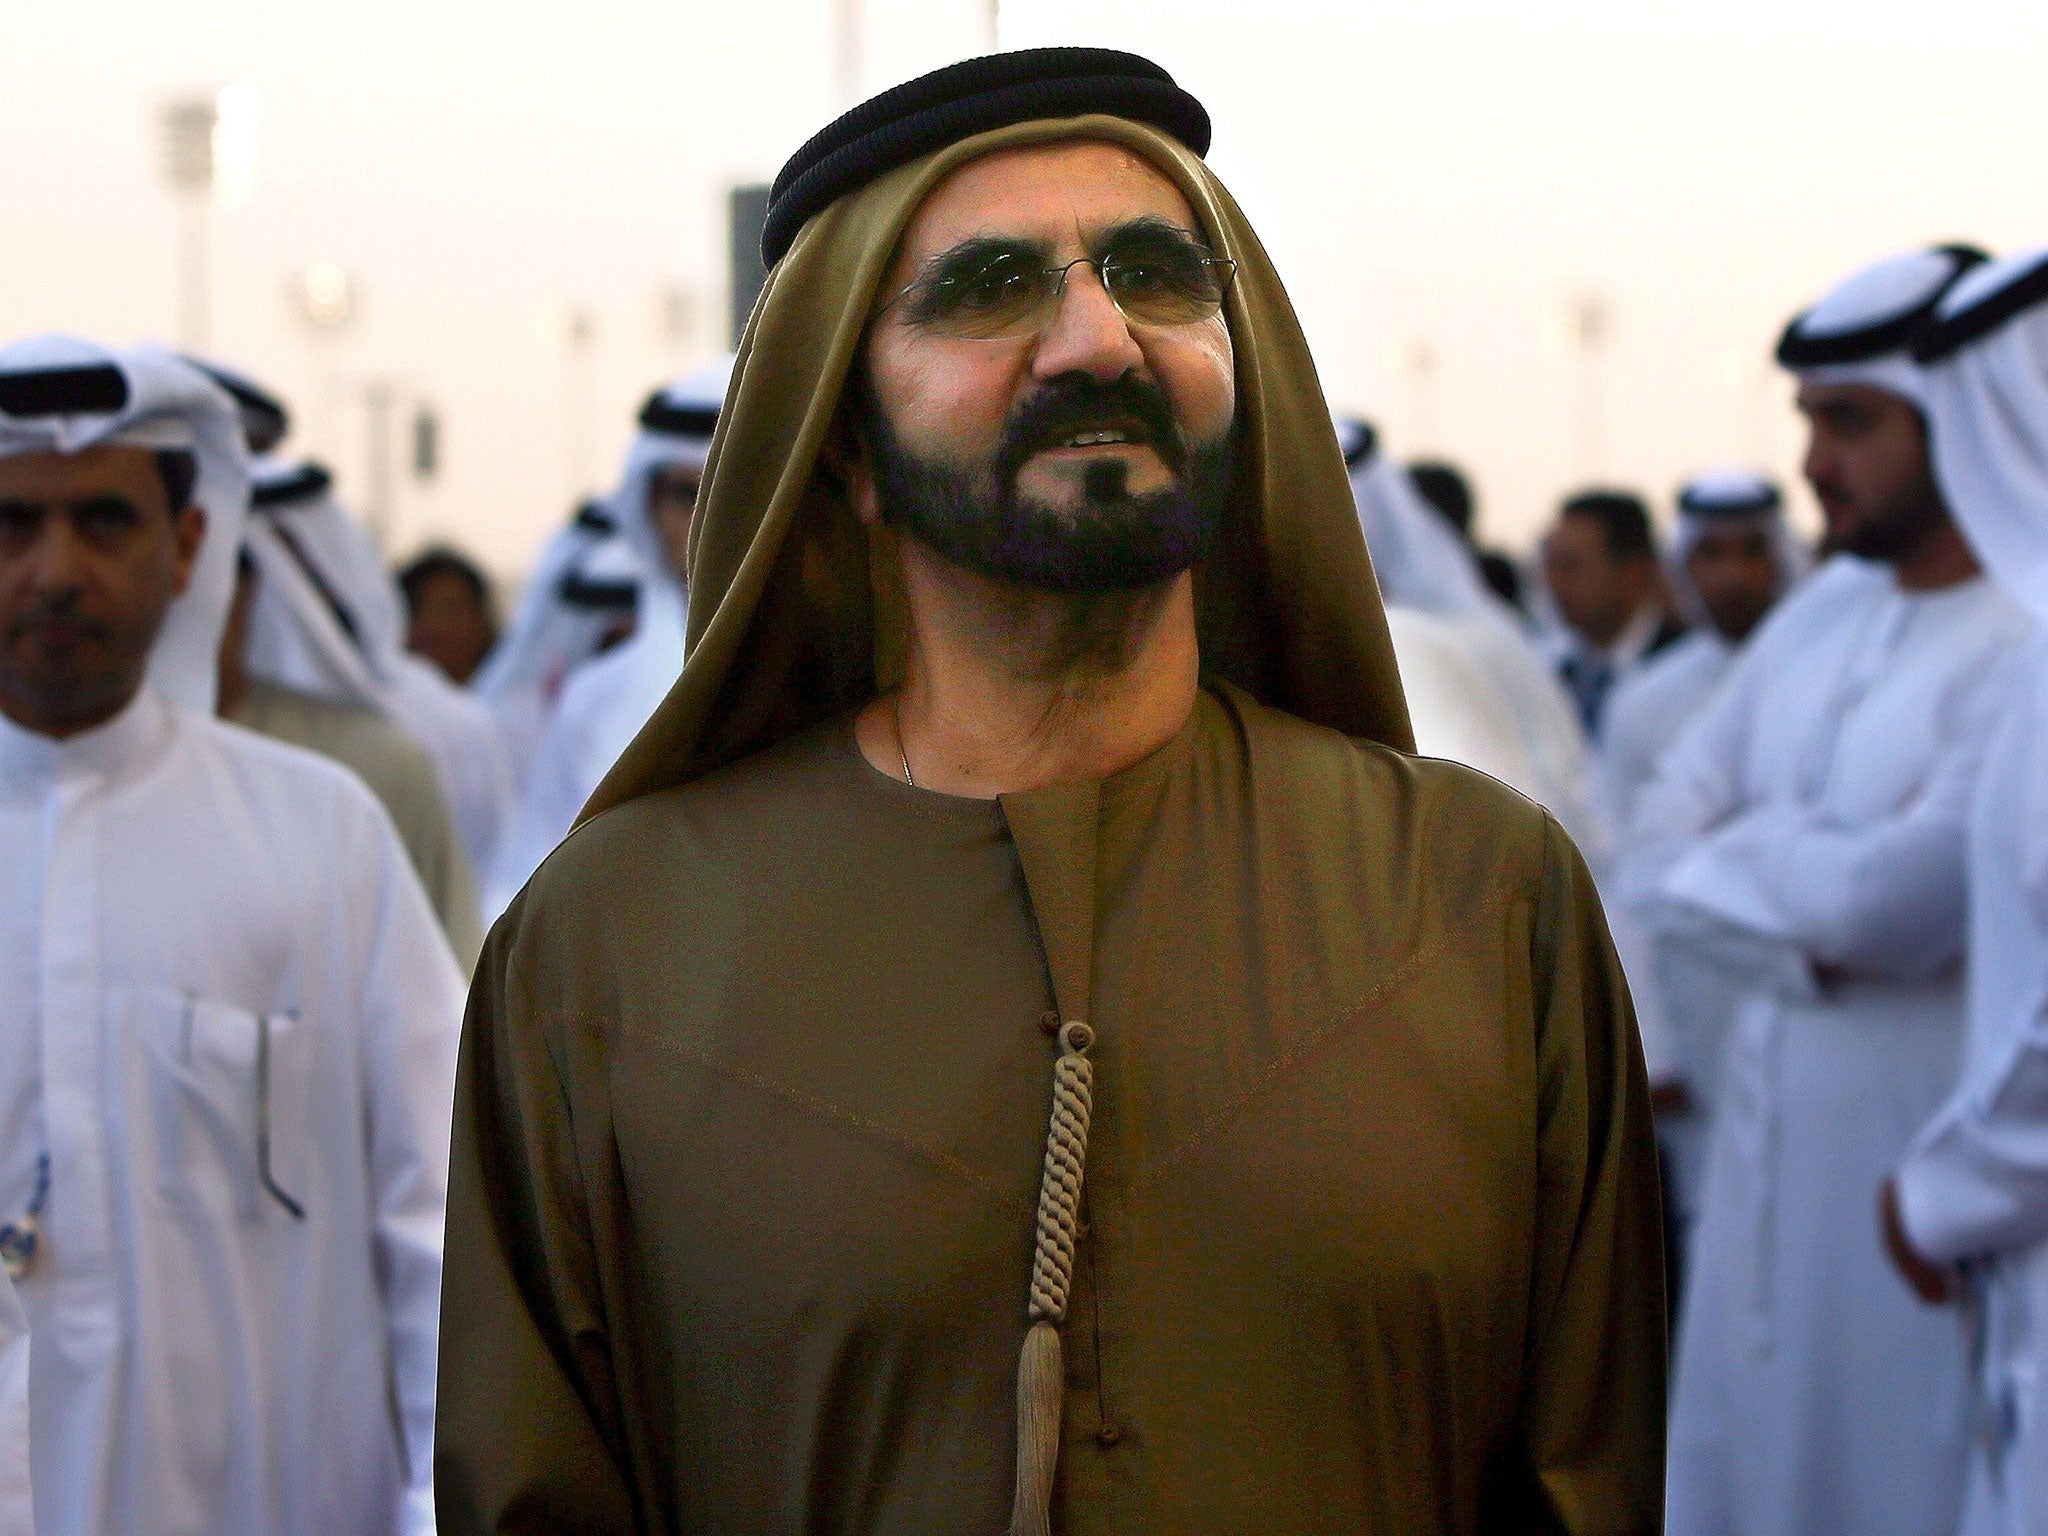 Sheikh Mohammed bin Rashid al-Maktoum announced the reshuffle on Twitter